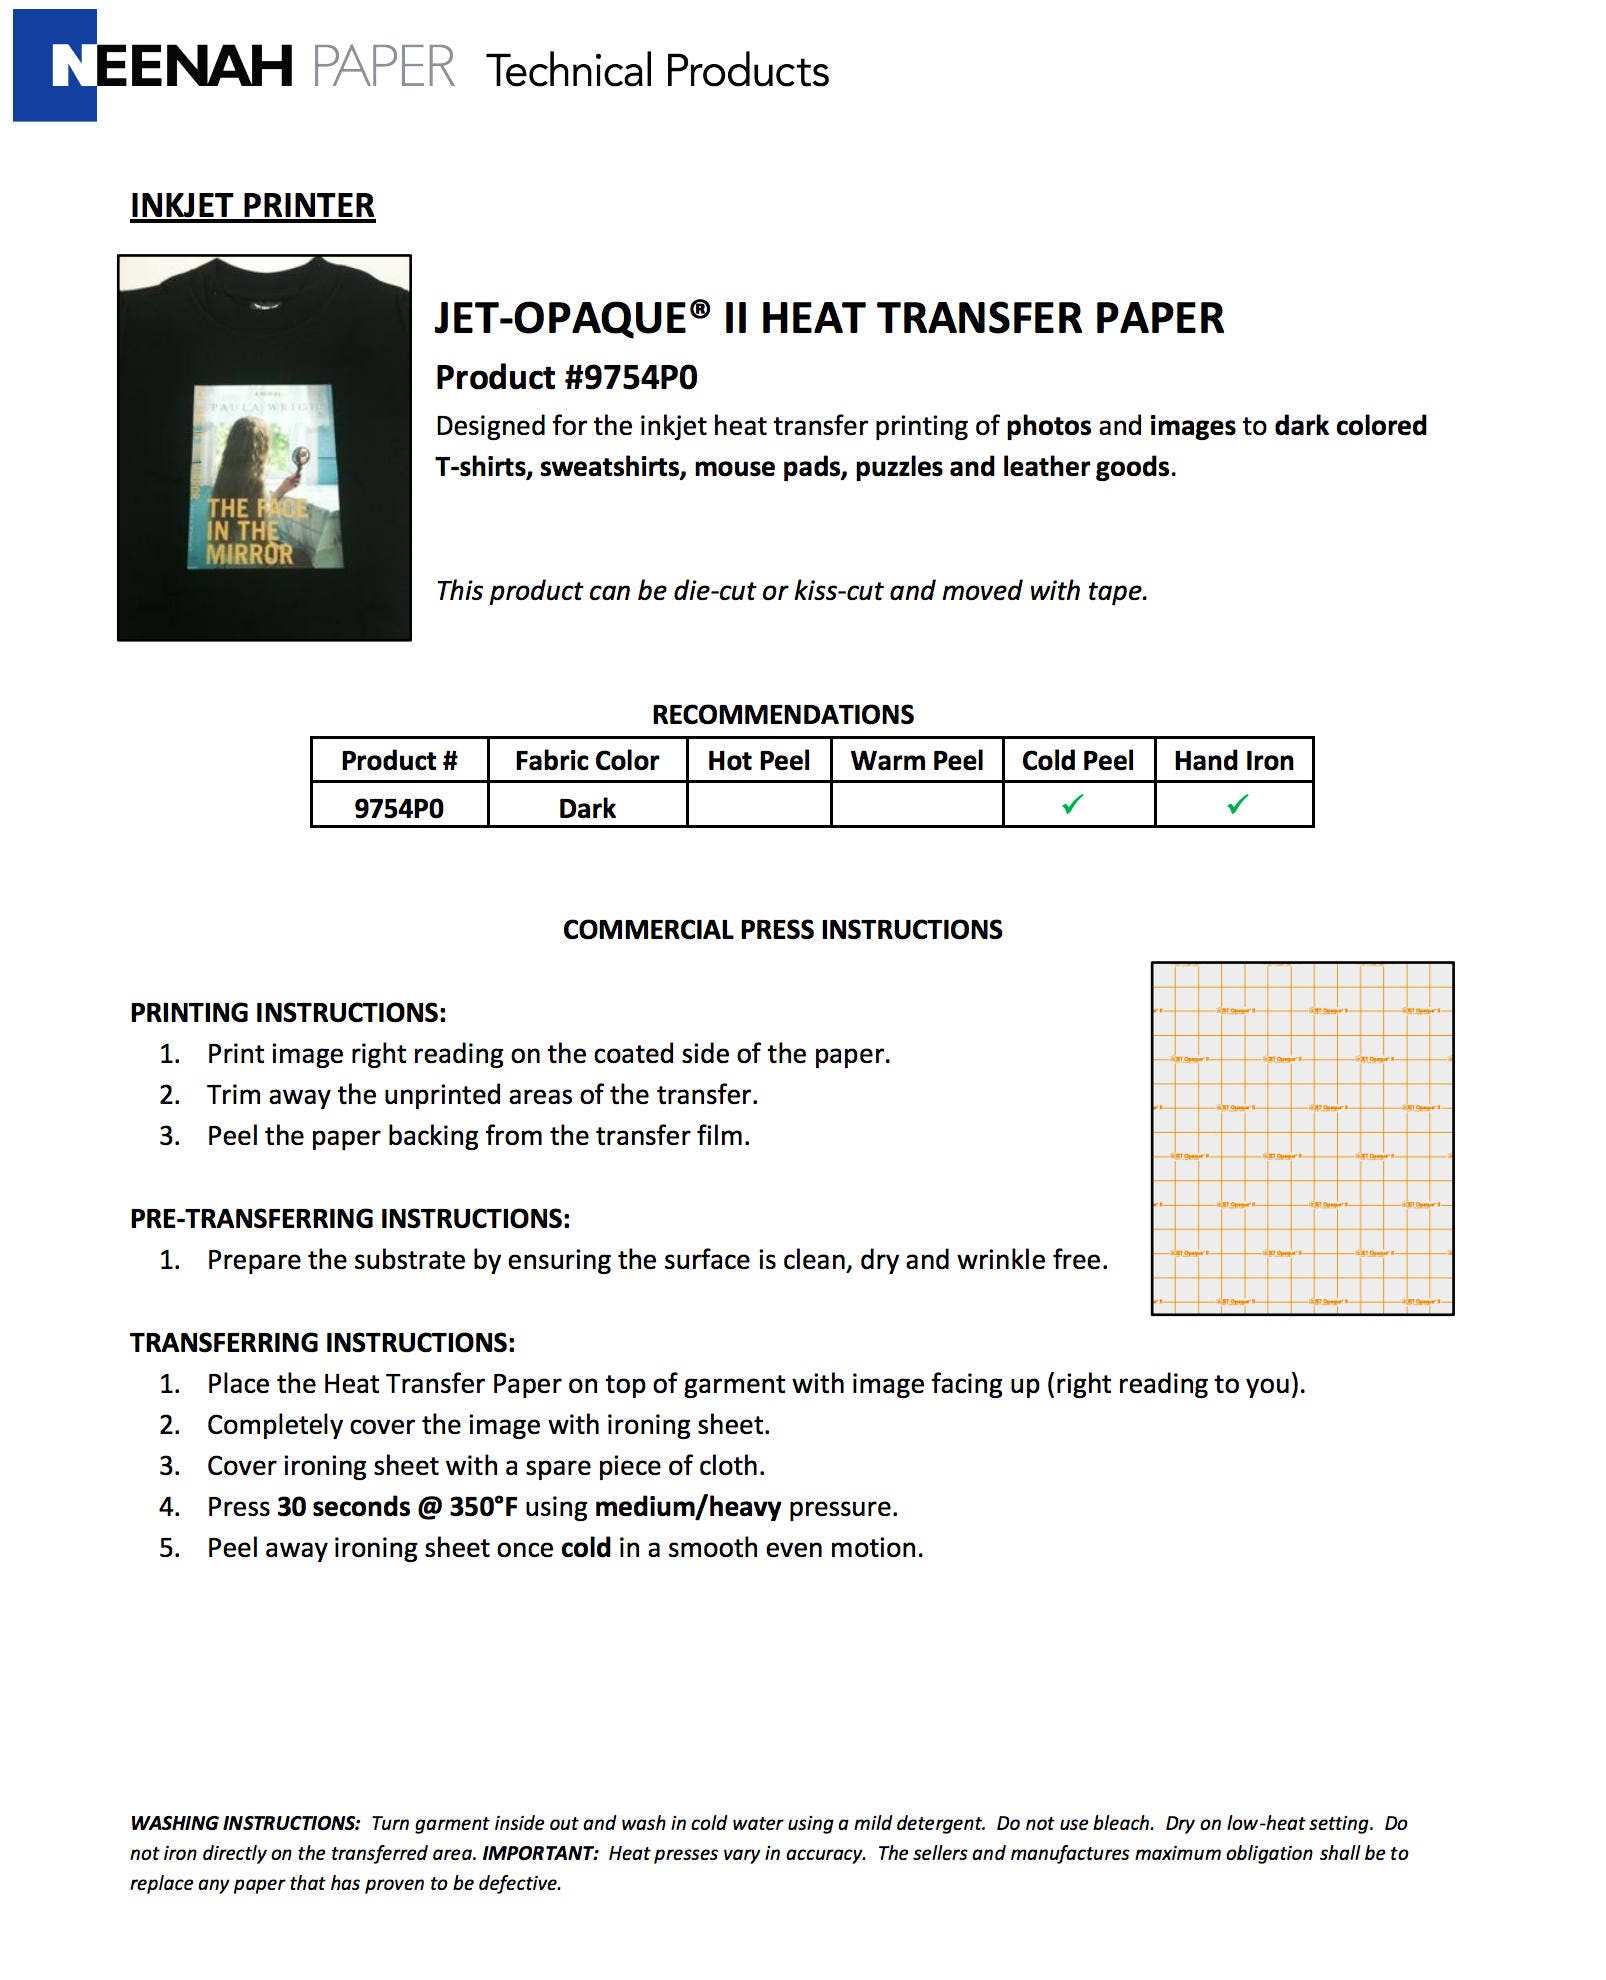 JET-OPAQUE II Inkjet Transfer Paper - 11 x 17